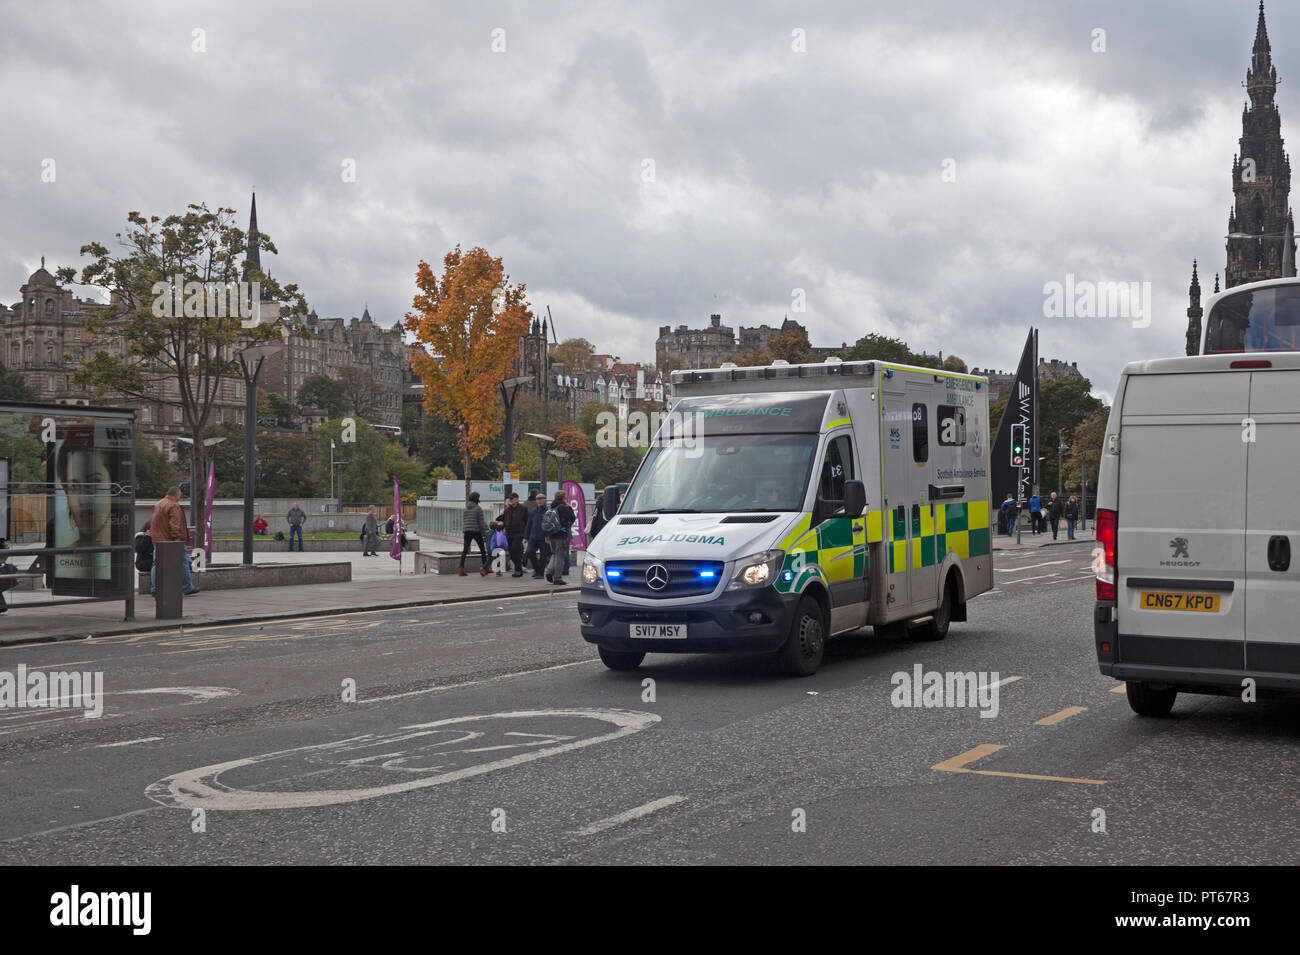 Krankenwagen mit Blaulicht Schnellfahren in 20 Zone auf Notfallmaßnahmen, Princes Street, Edinburgh, Schottland, Großbritannien Stockfoto